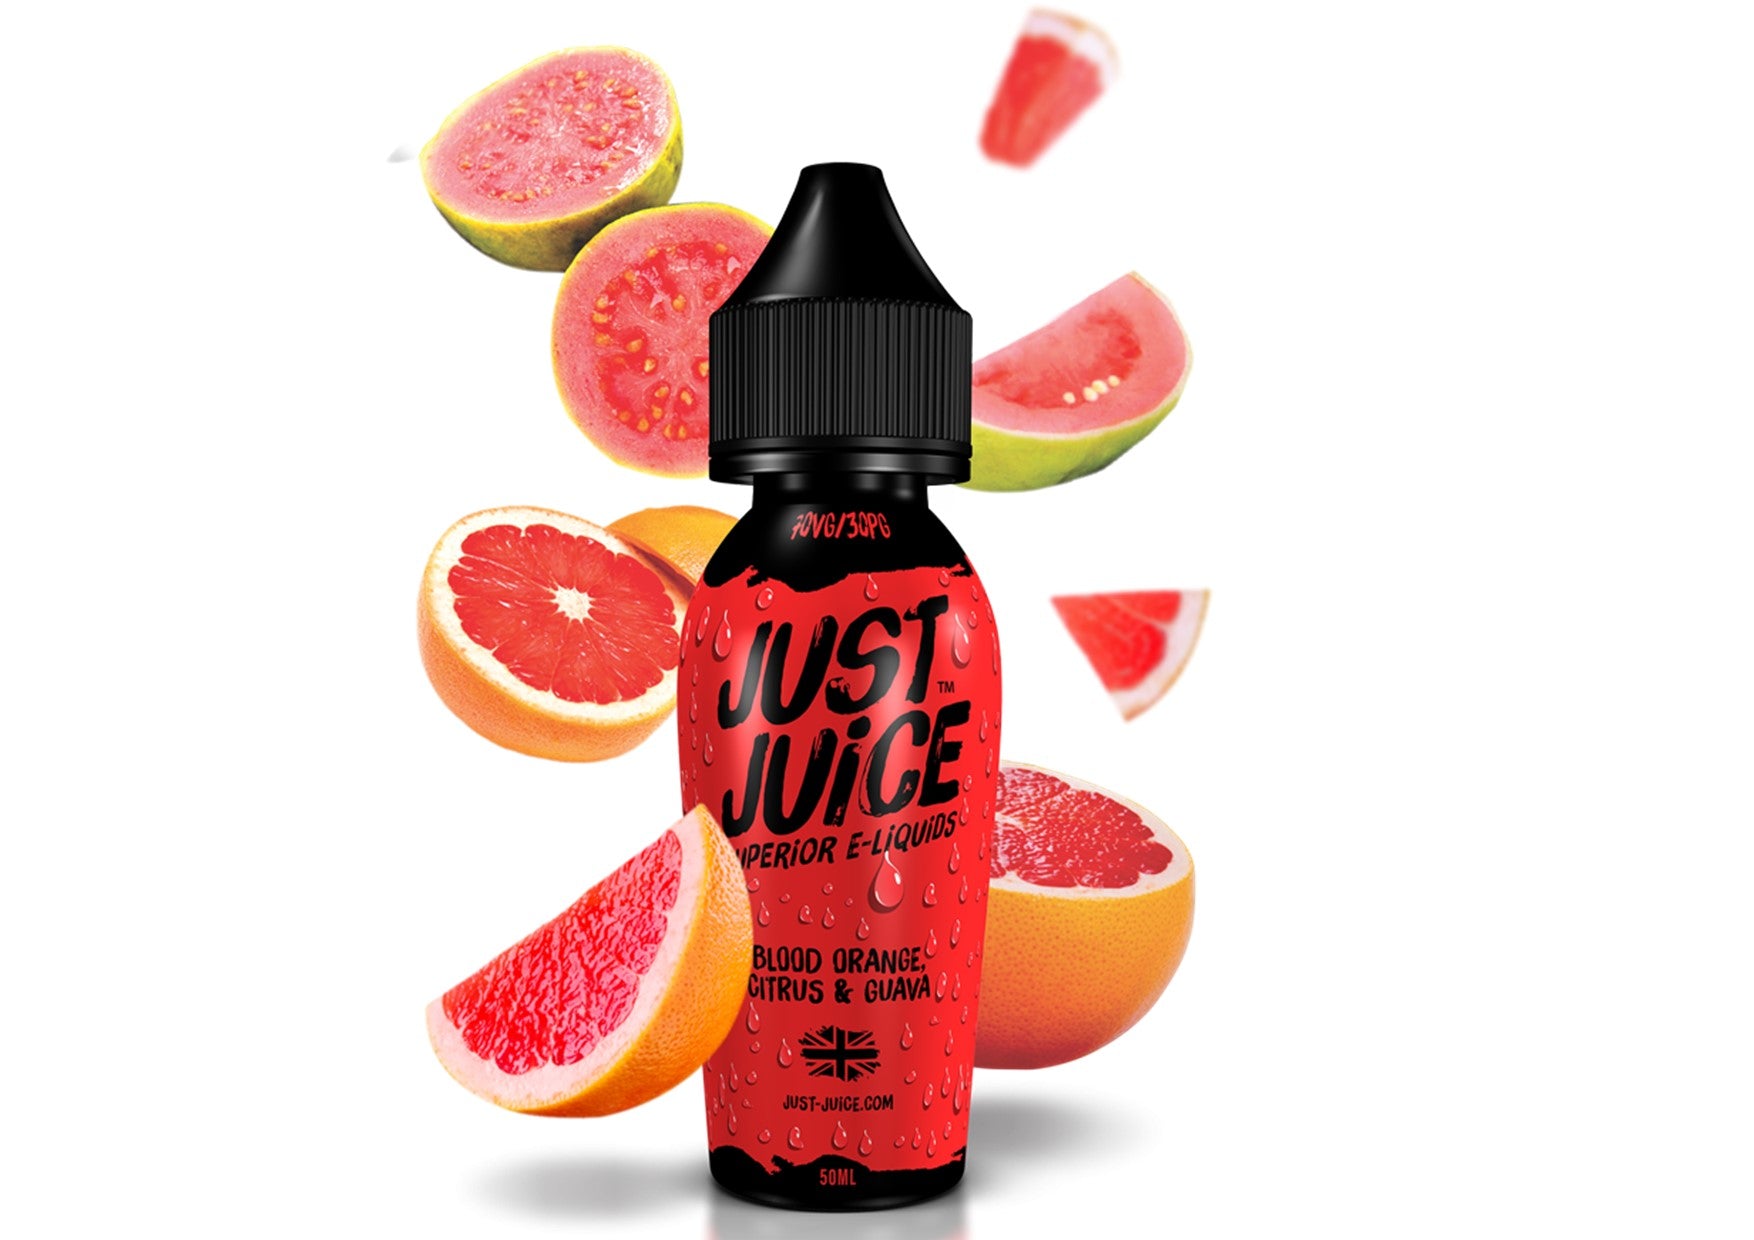 Just Juice | Blood Orange, Citrus & Guava